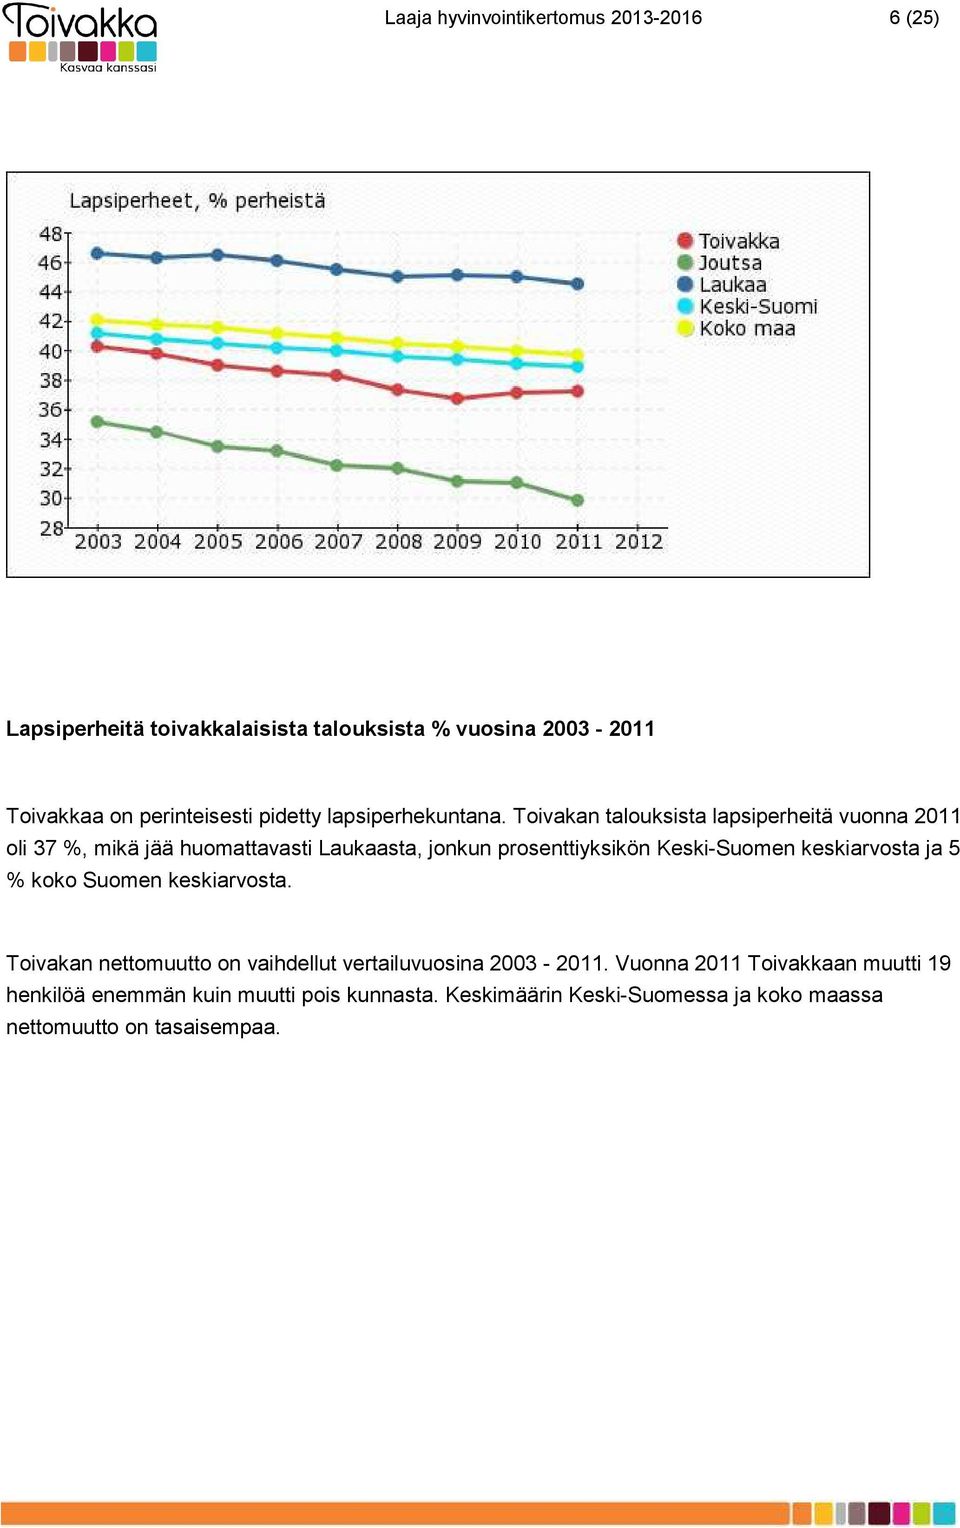 Toivakan talouksista lapsiperheitä vuonna 2011 oli 37 %, mikä jää huomattavasti Laukaasta, jonkun prosenttiyksikön Keski-Suomen